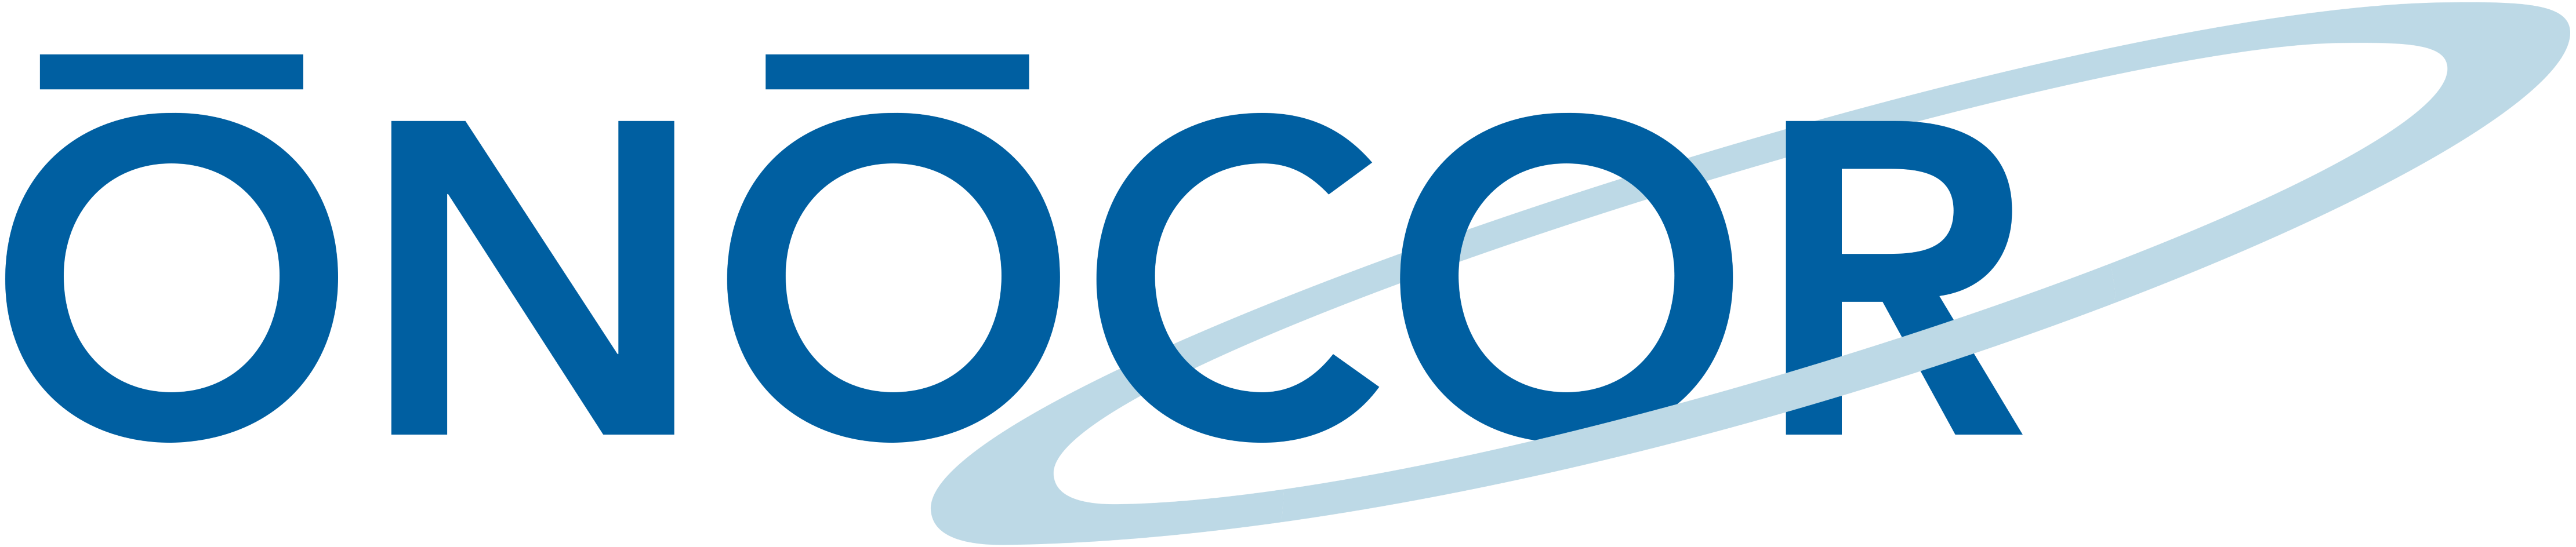 ONOCOR logo.png